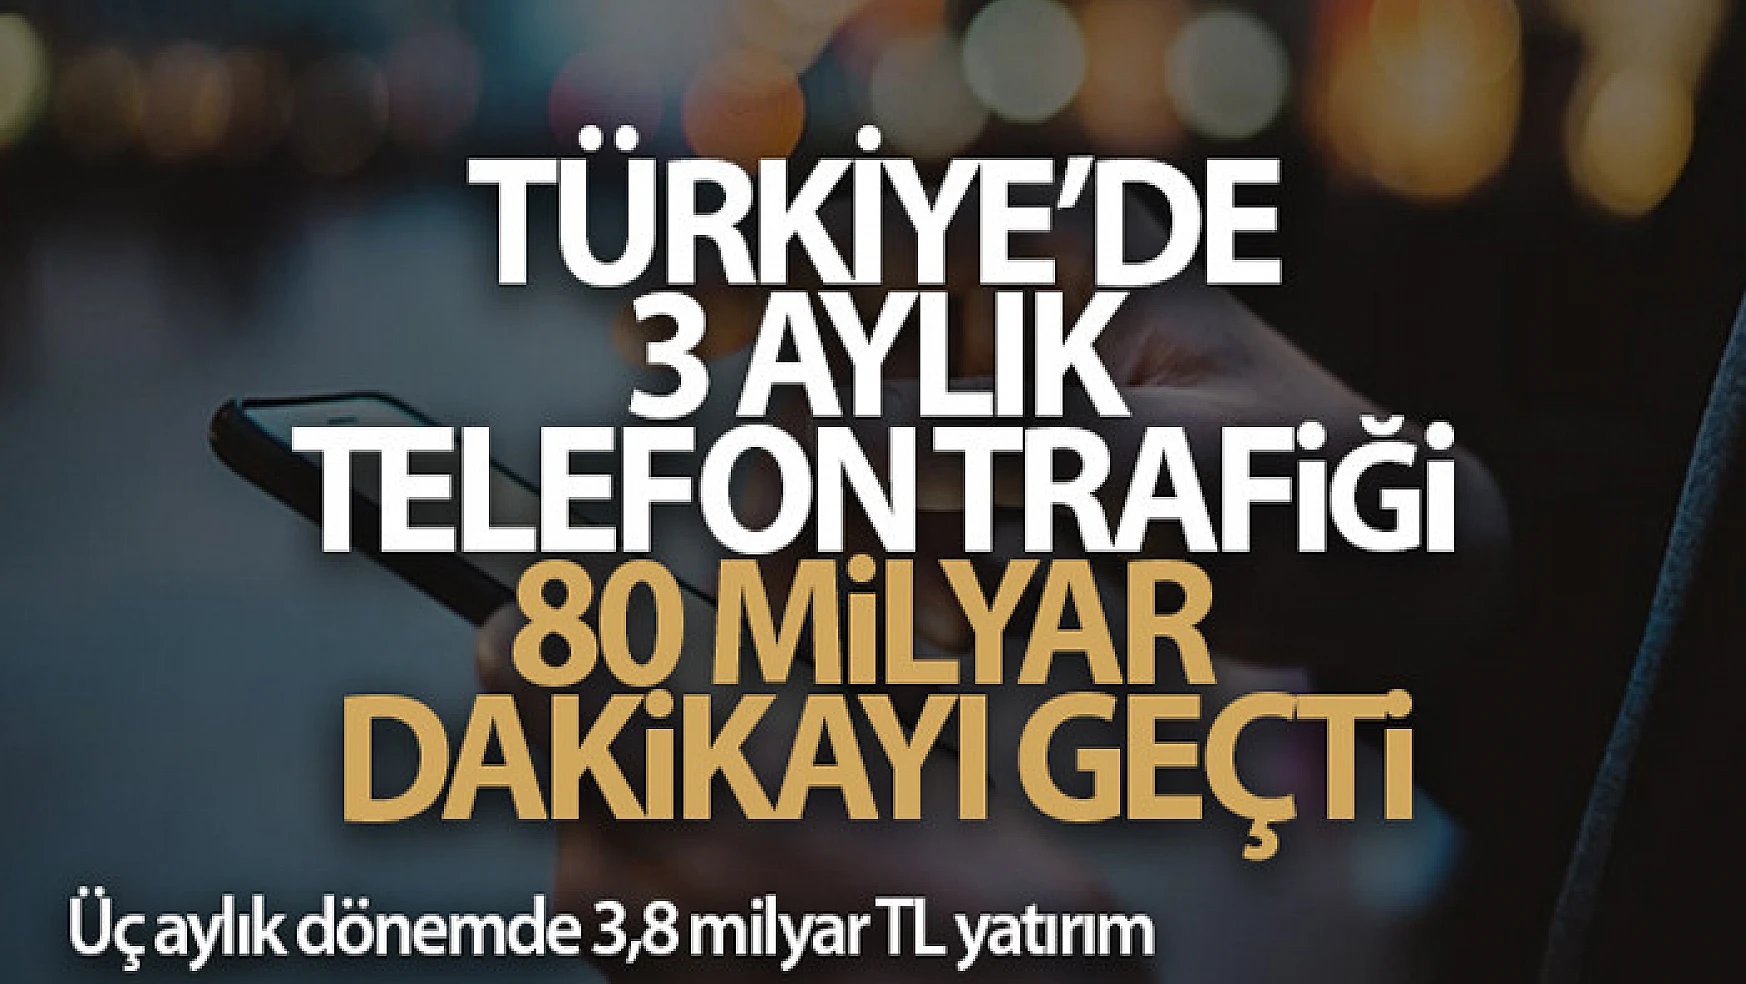 Türkiye'de 3 aylık telefon trafiği 80 milyar dakikayı geçti